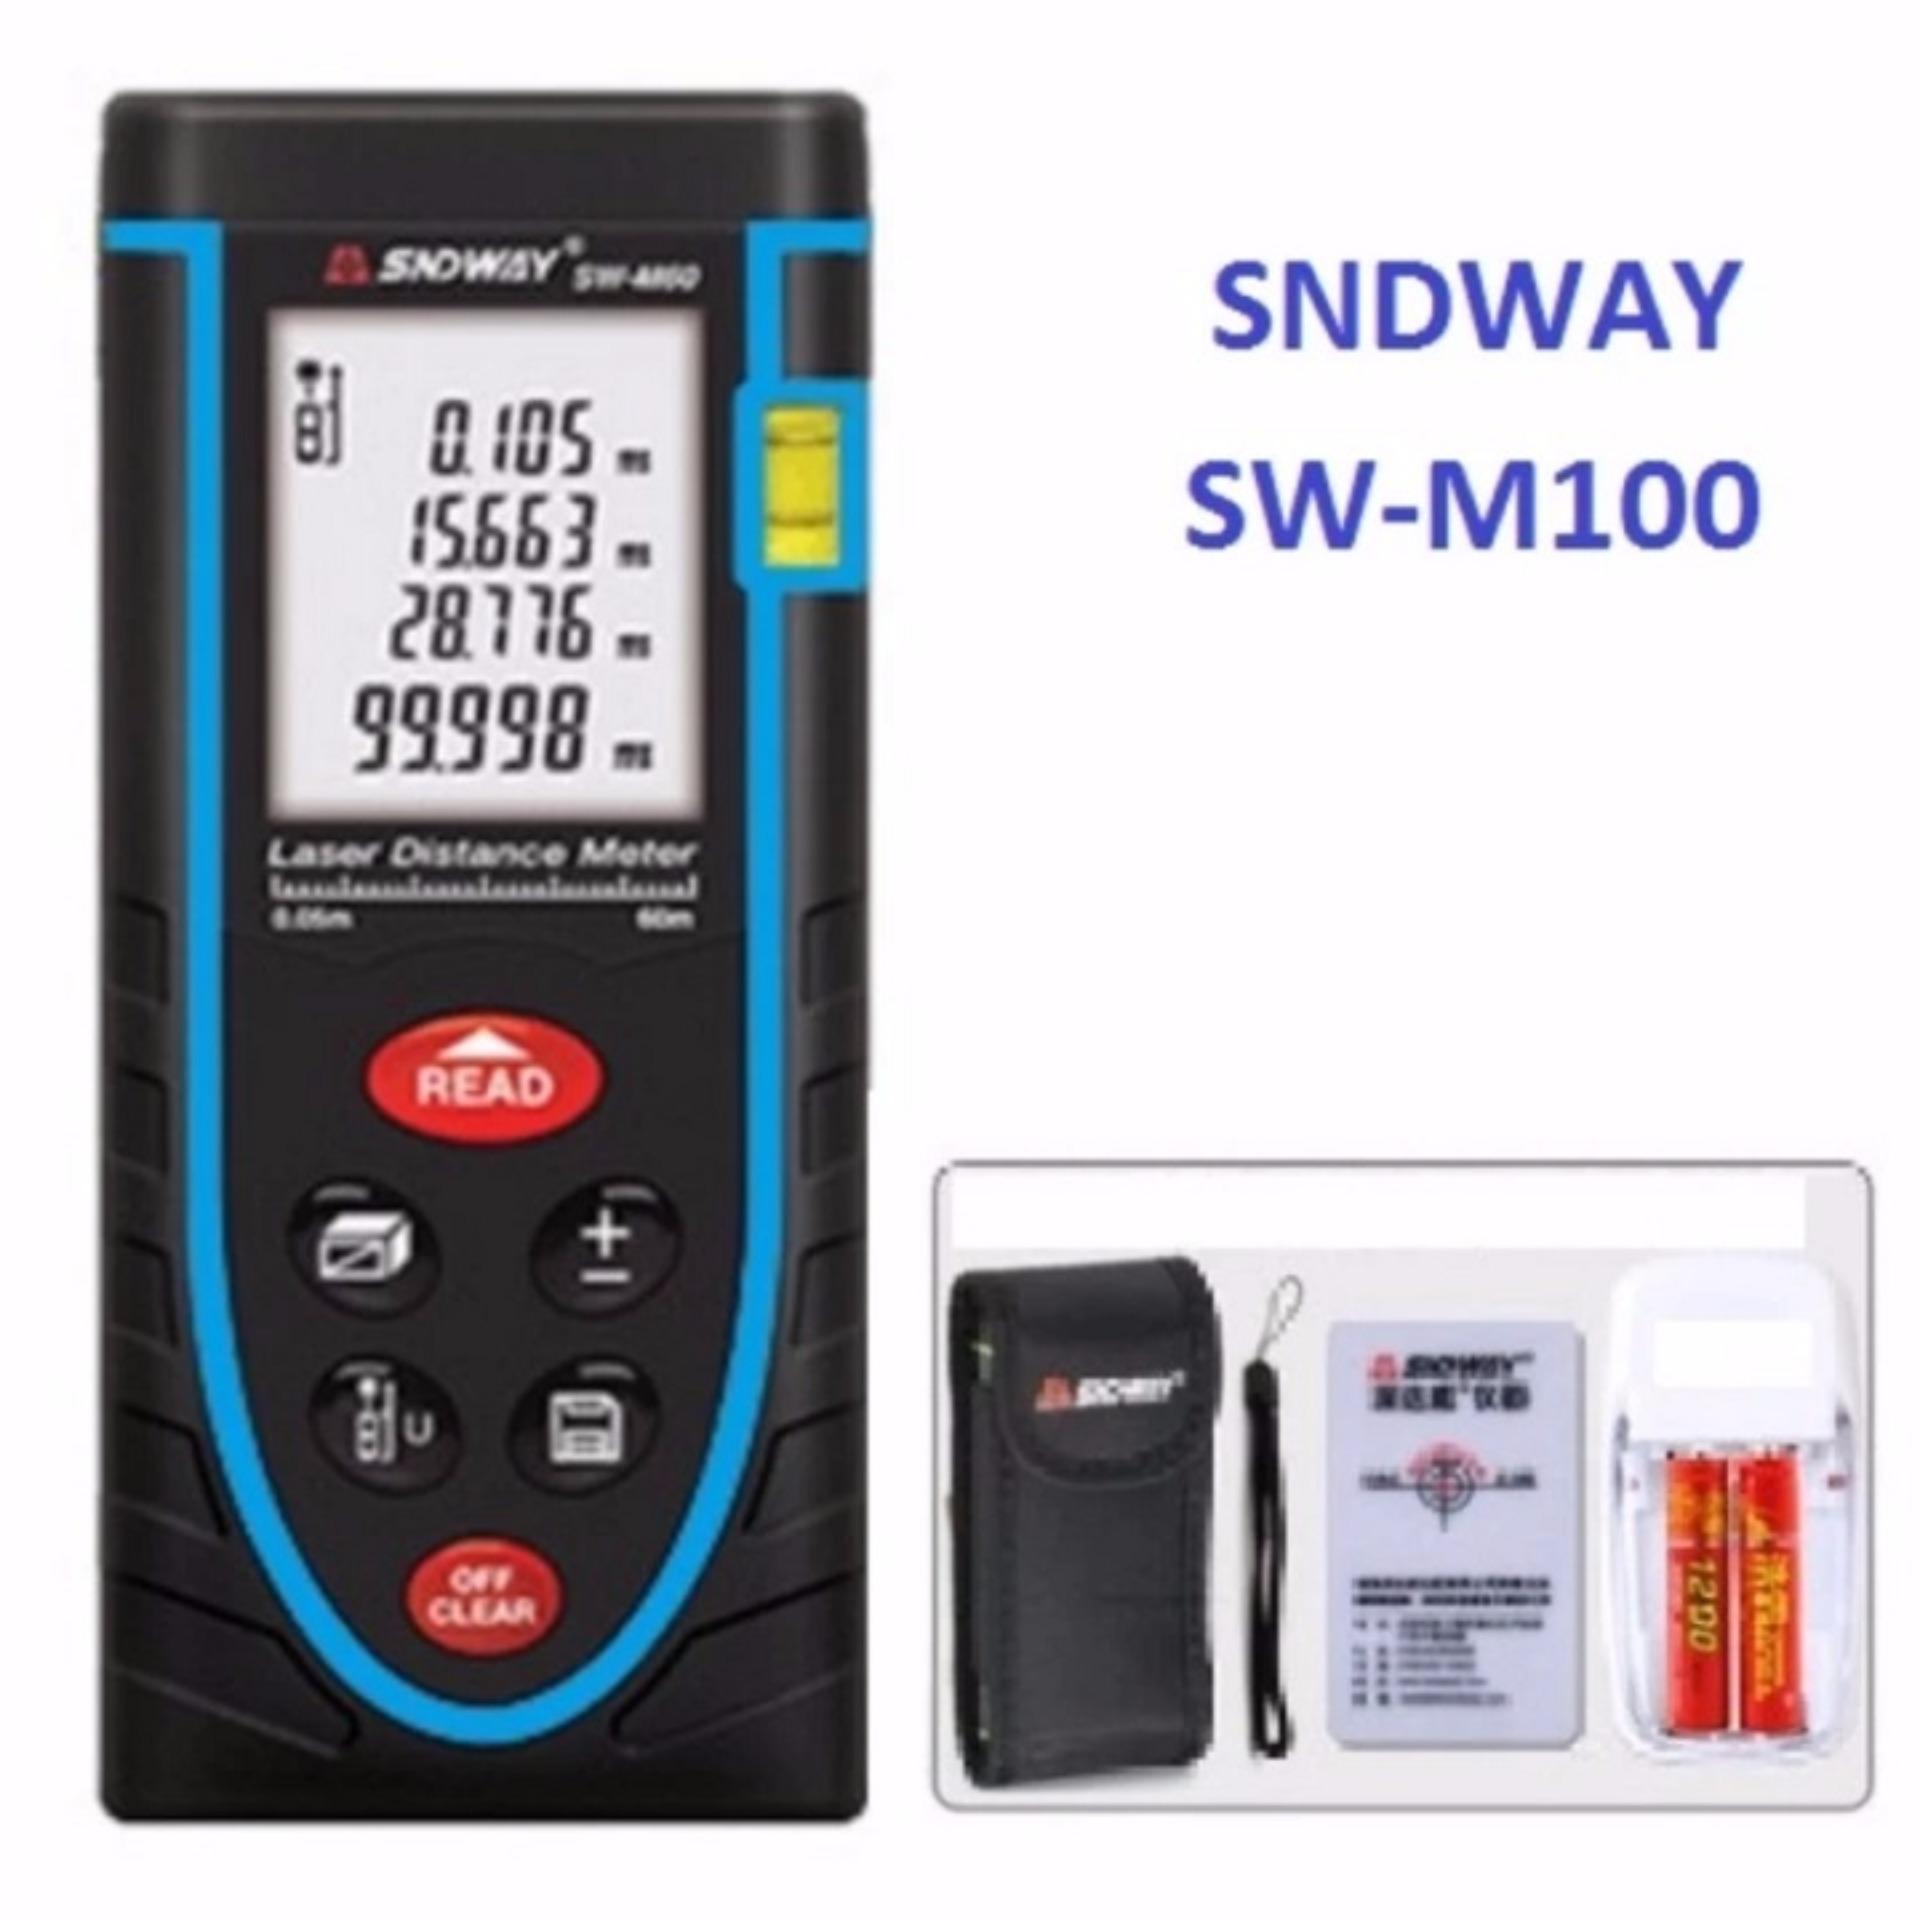 Thước đo khoảng cách bằng tia laser SNDWAY SW-M100 cự ly 100m GX-868A